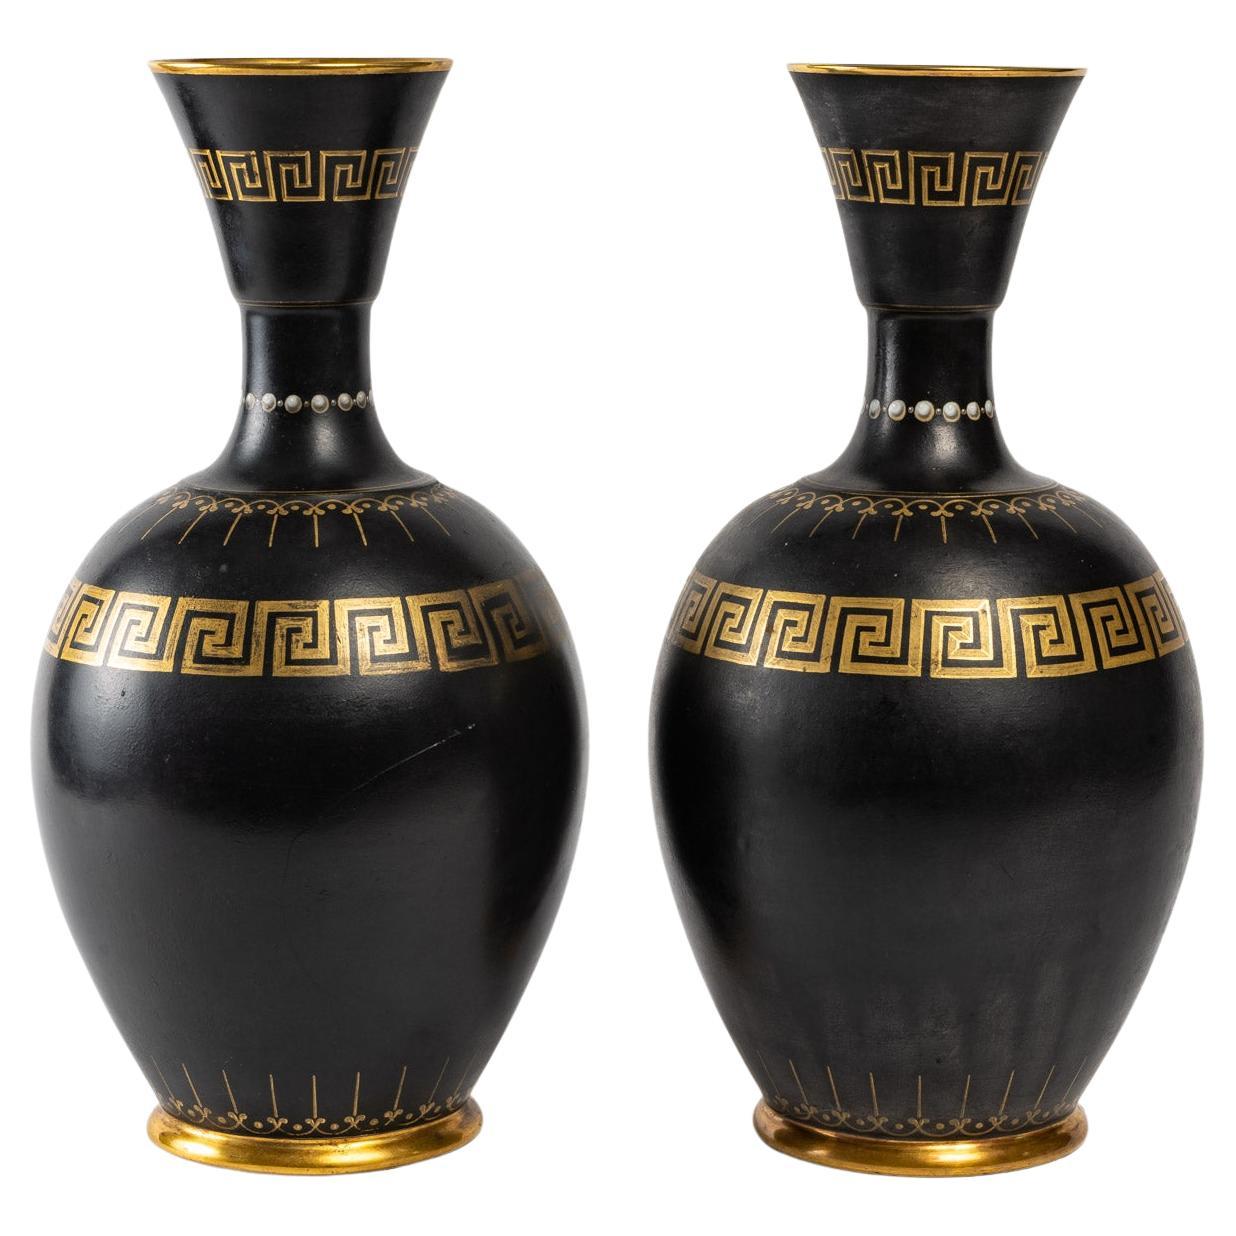 Ancient Greek Vase - 9 For Sale on 1stDibs | greek style vase 